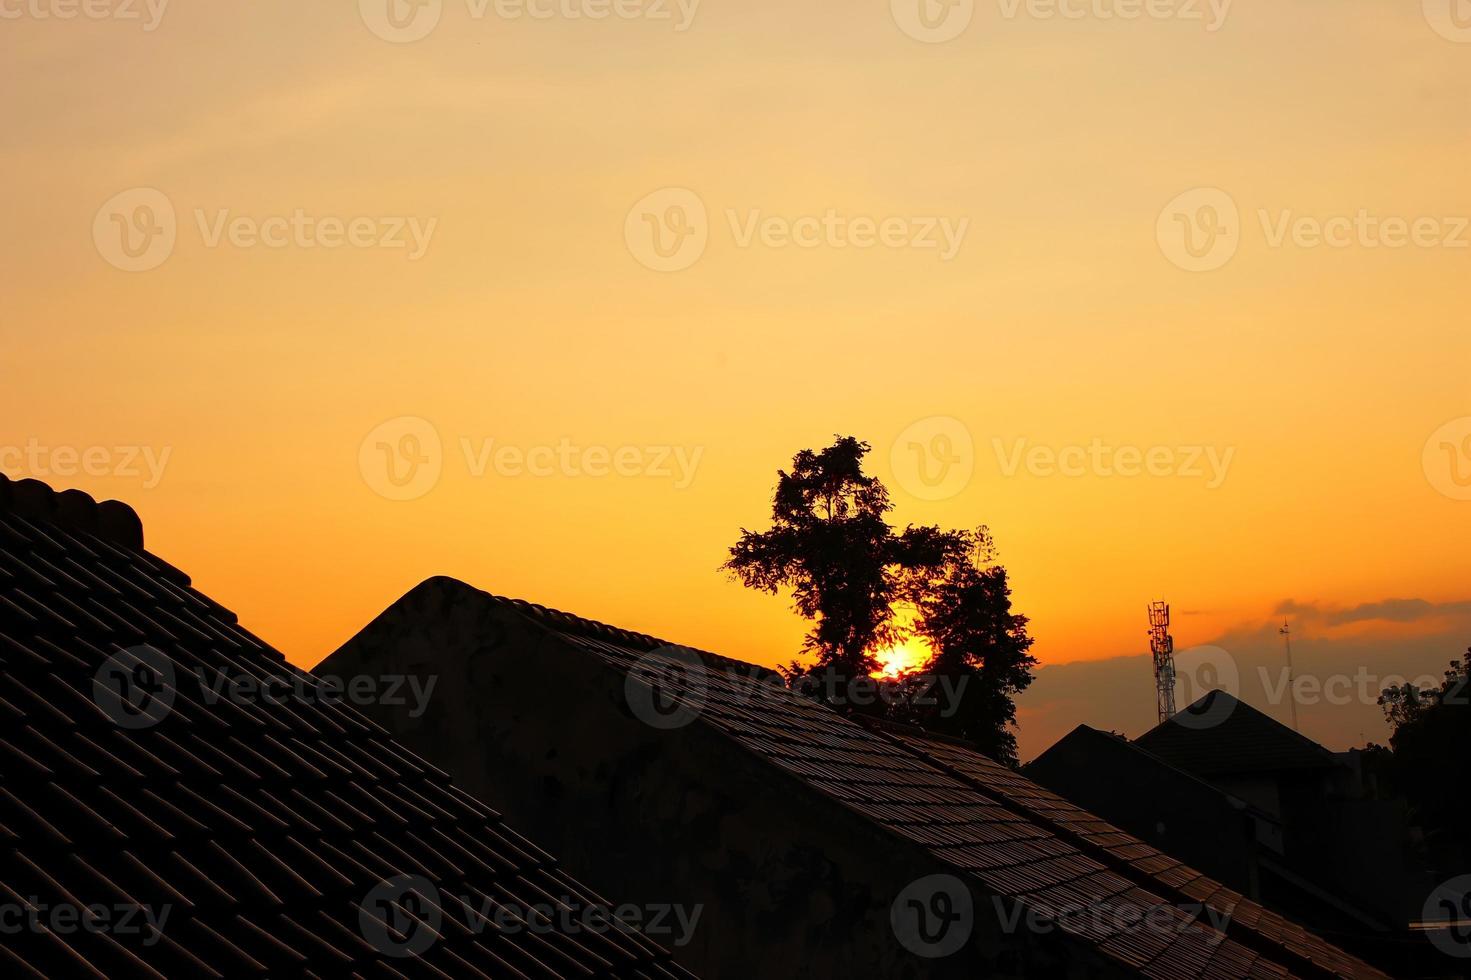 Fotos von Dächern, Bäumen und anderen Häusern am Nachmittag, wo der Himmel orange ist, kann dieses Foto ein besonderes Gefühl für diejenigen hervorrufen, die es sehen